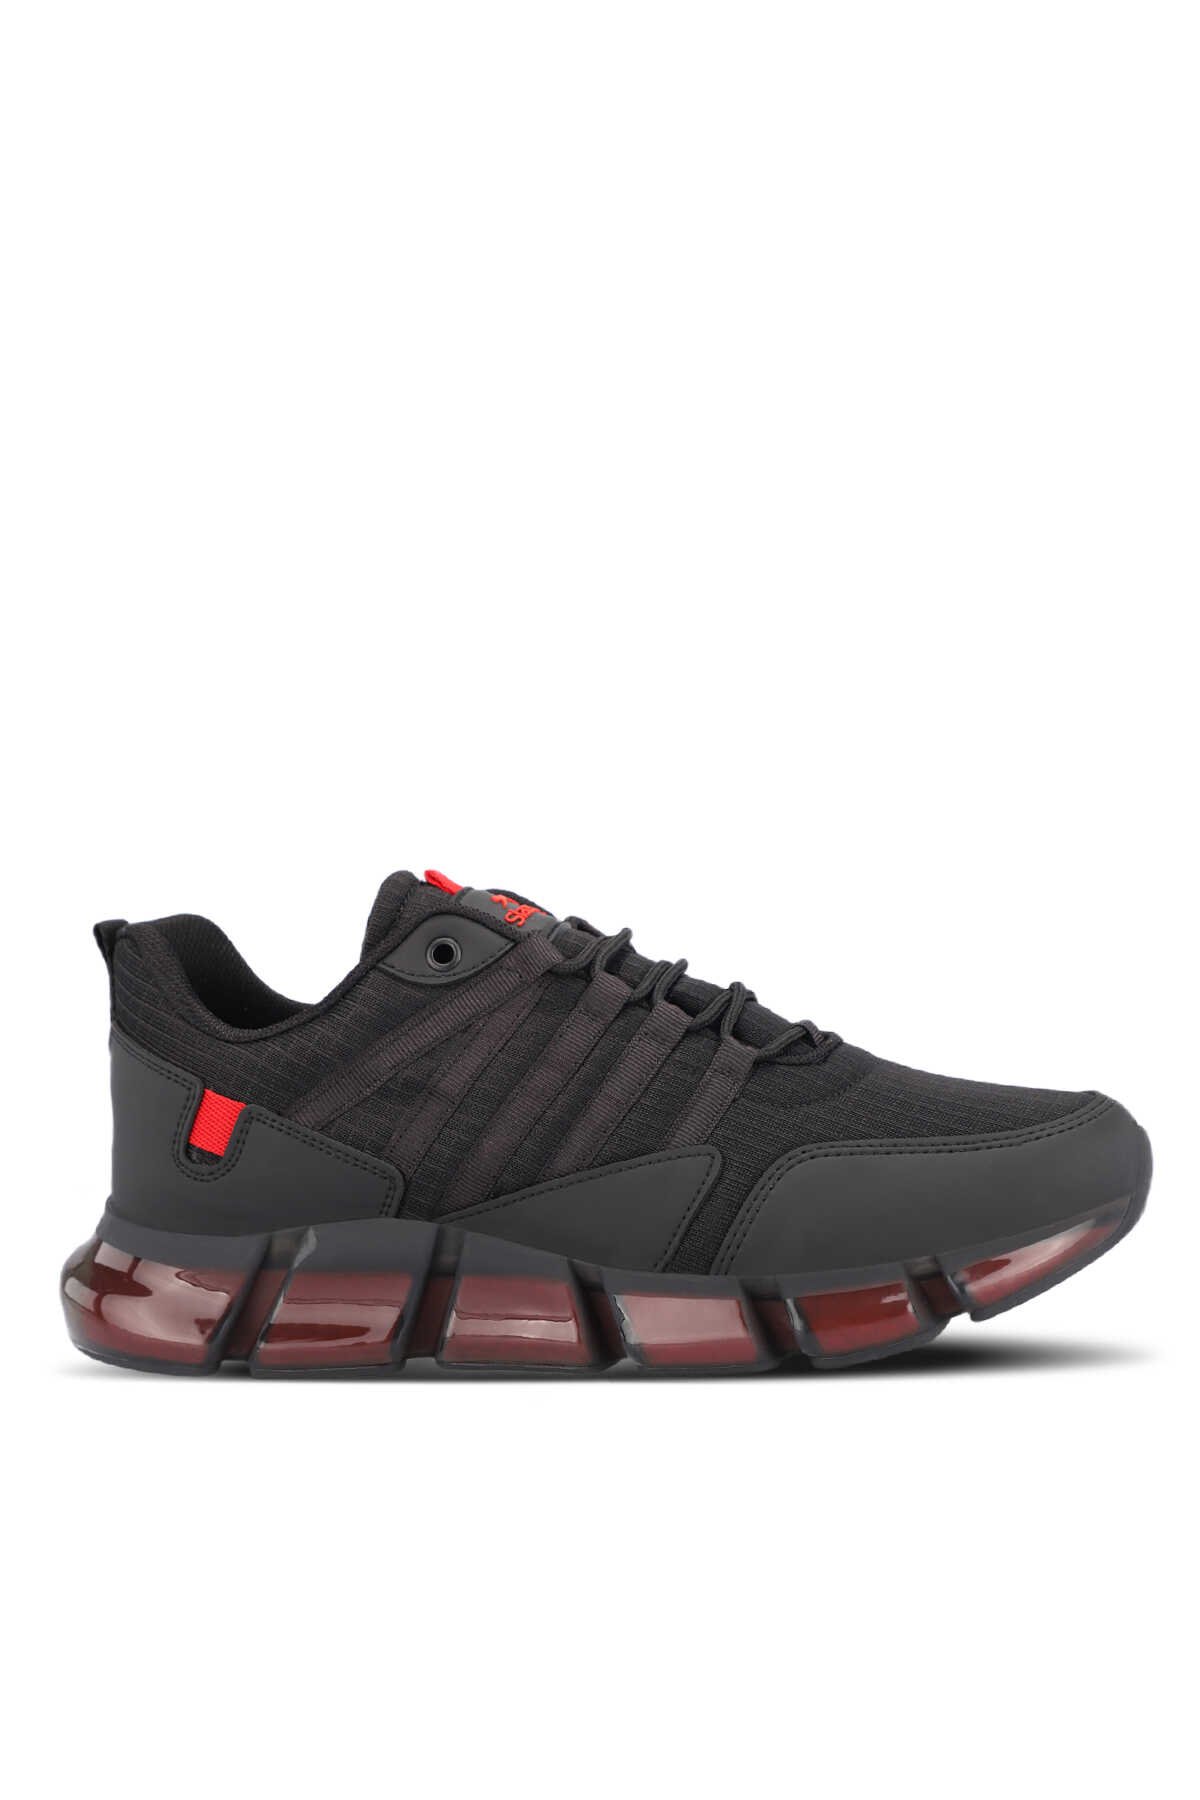 Slazenger - Slazenger ZEPH Erkek Sneaker Ayakkabı Siyah / Kırmızı